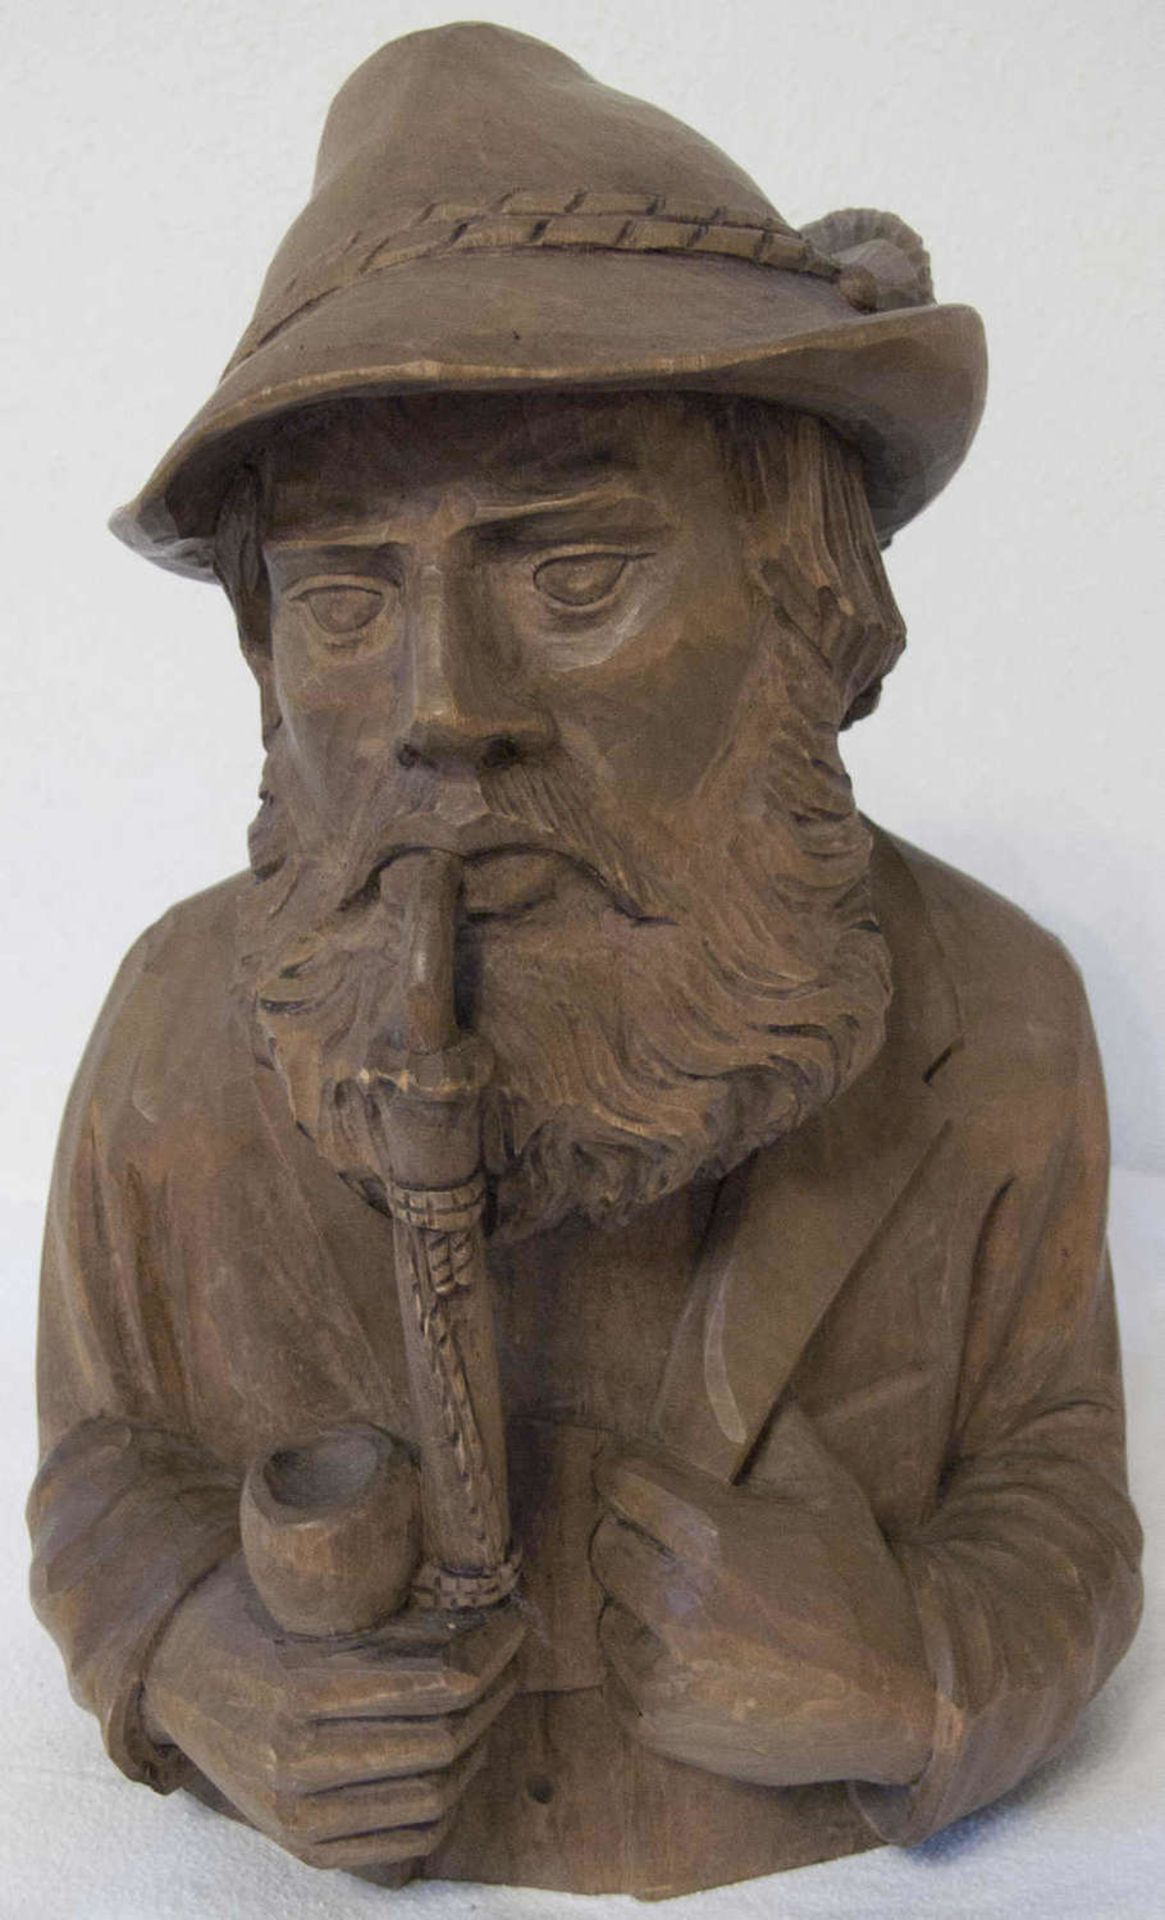 Holz - Skulptur "Büste eines Pfeiffen - Rauchers". Massiv - Holz, handgeschnitzt. Höhe: ca. 32 cm.